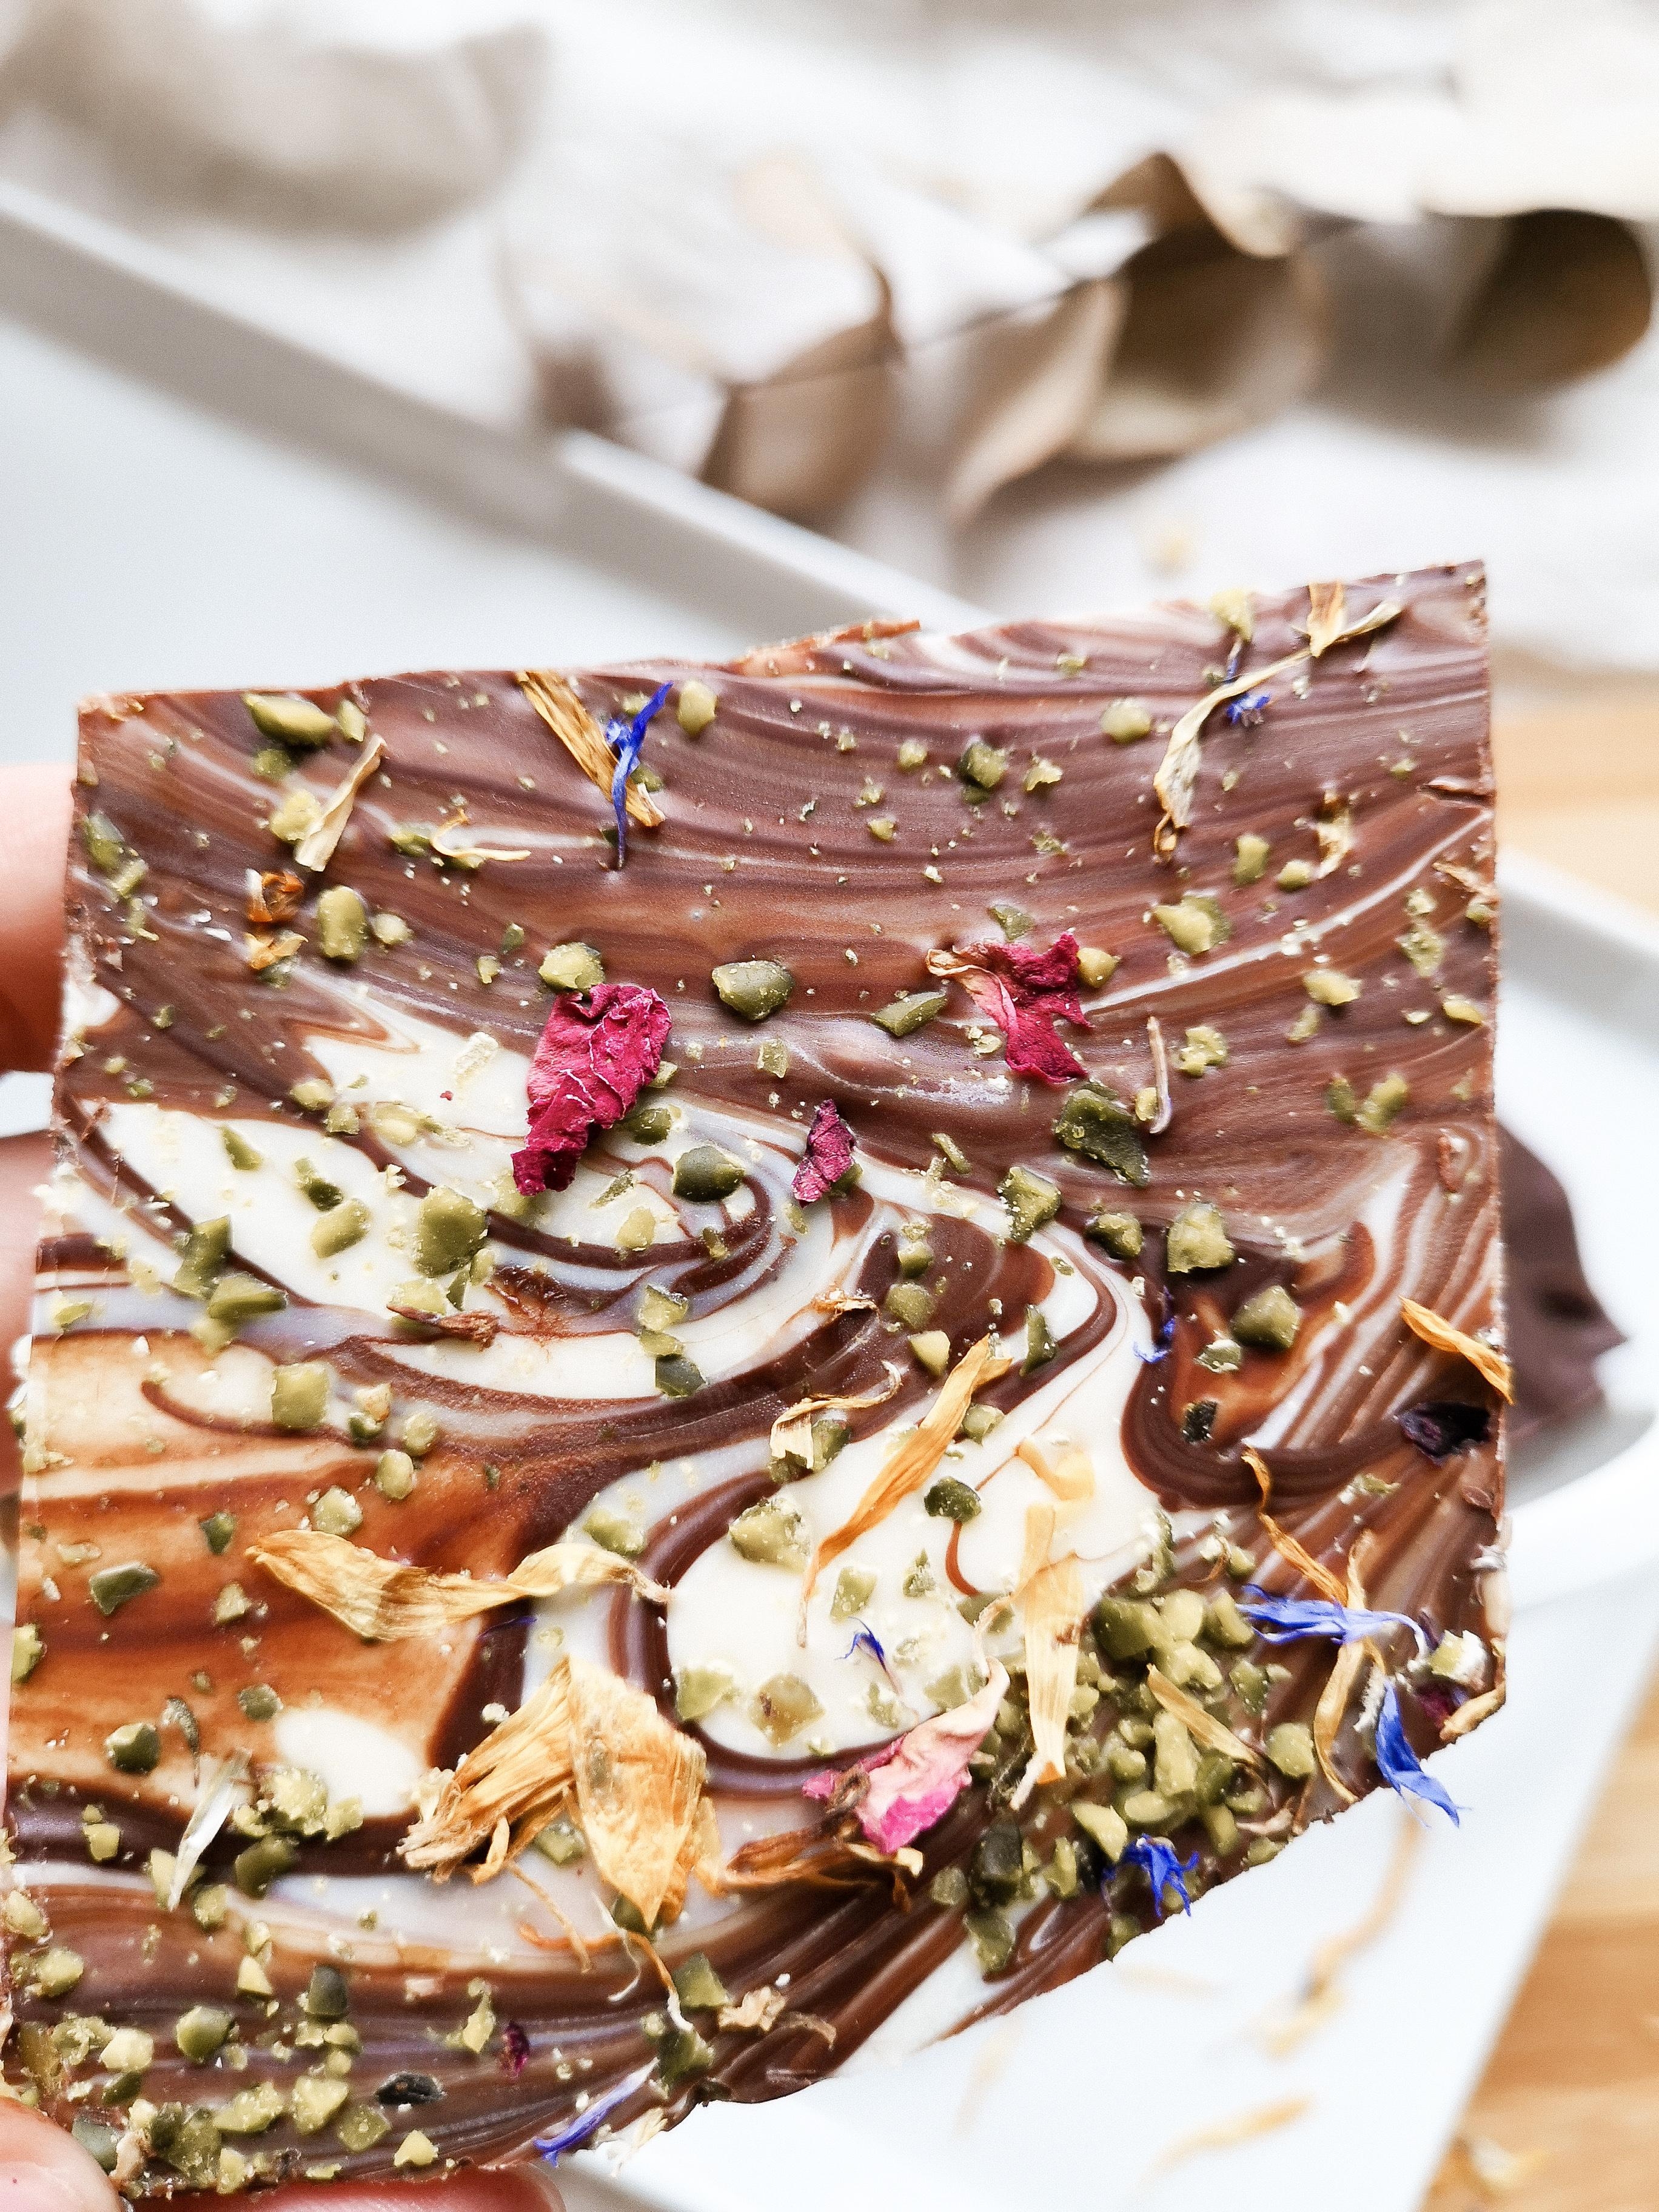 #Schokolade mit essbaren #Blumen ♡♡♡

#flowers #foodlover #food #foodie #Küche #sonntag 